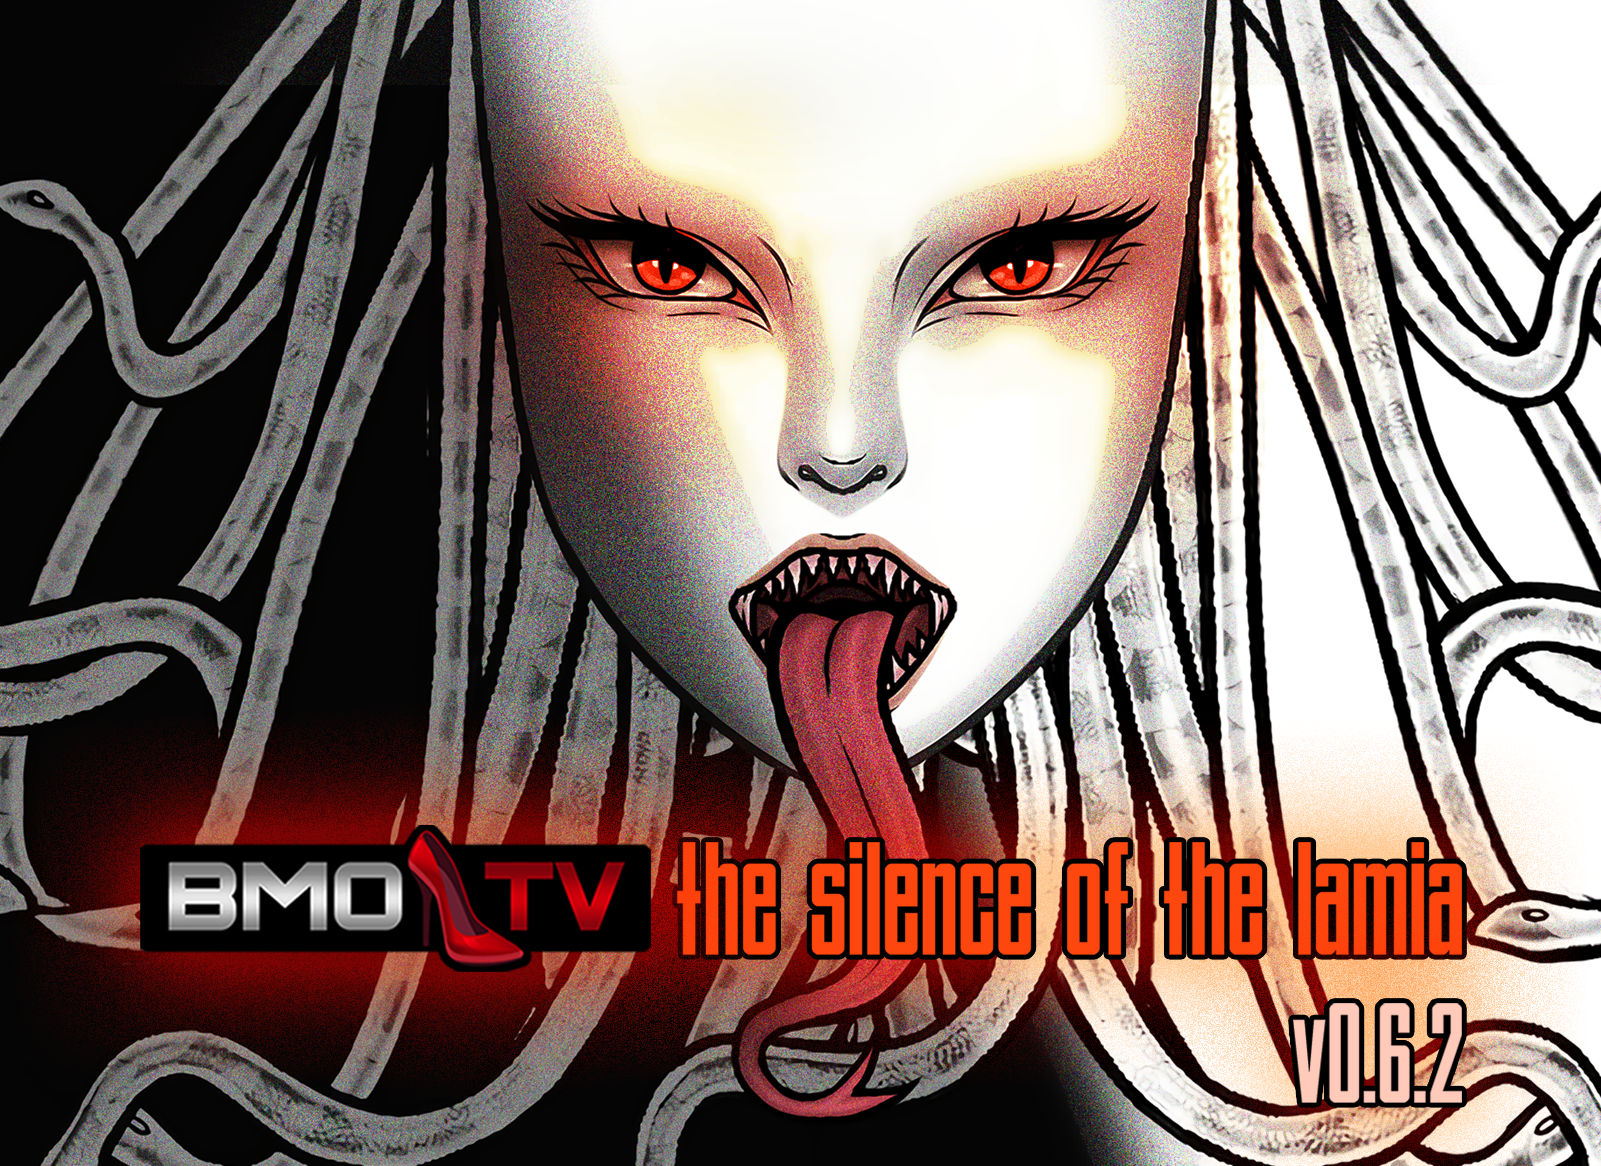 v0.6.2 - Silence of the Lamia